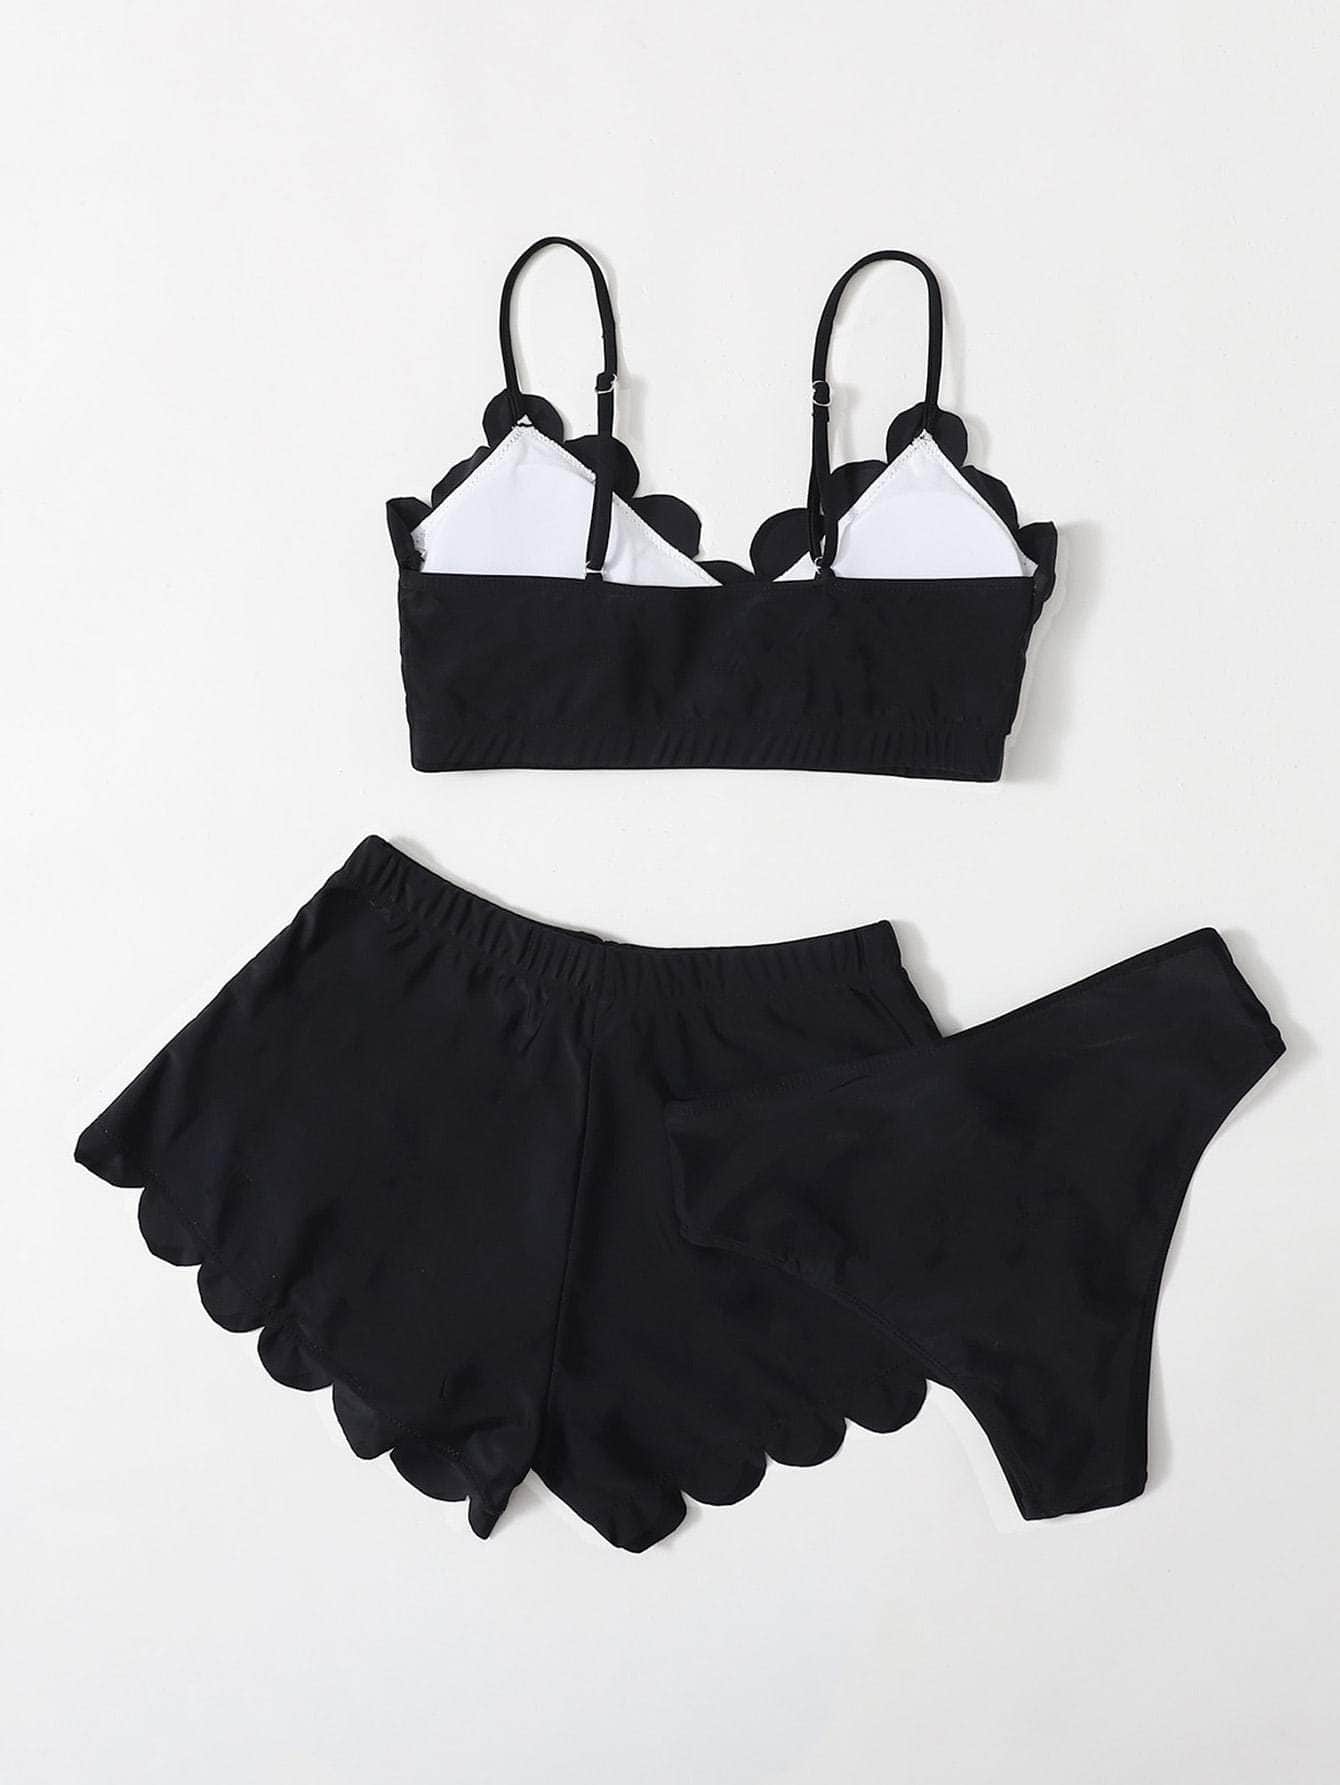 Negro / S 3 piezas vestido de baño bikini ribete en abanico